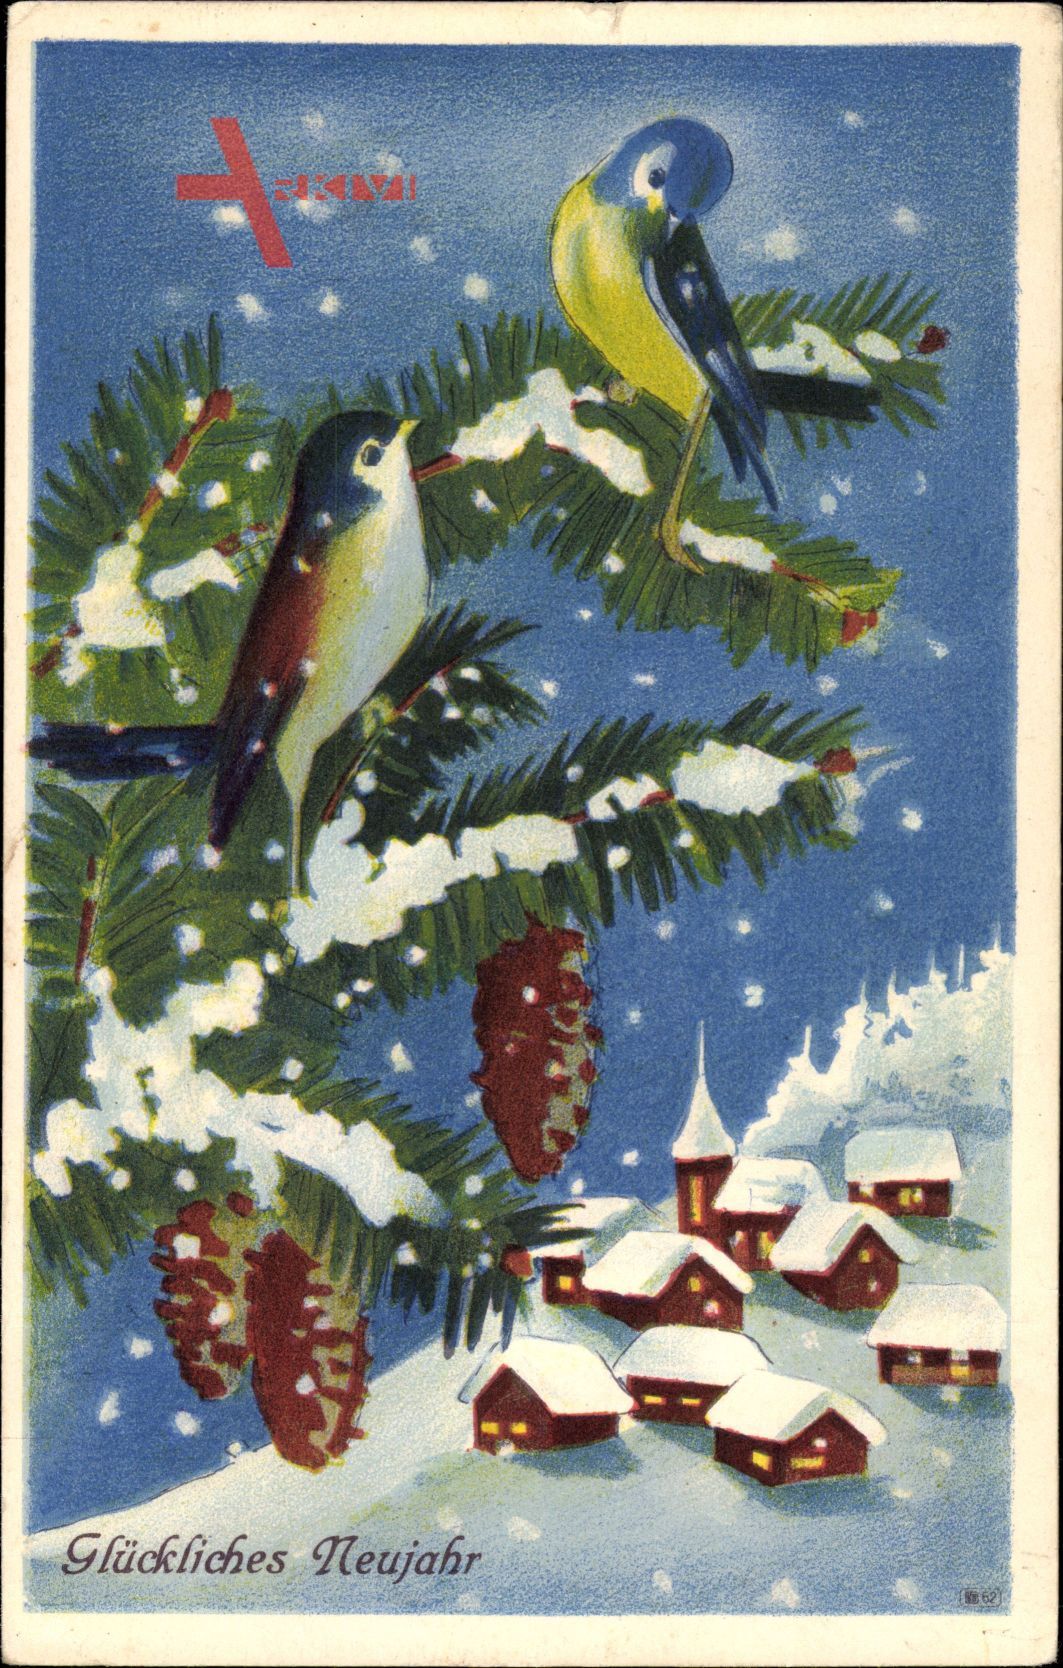 Glückwunsch Neujahr, Vögel auf einem Tannenzweig, Winterlandschaft